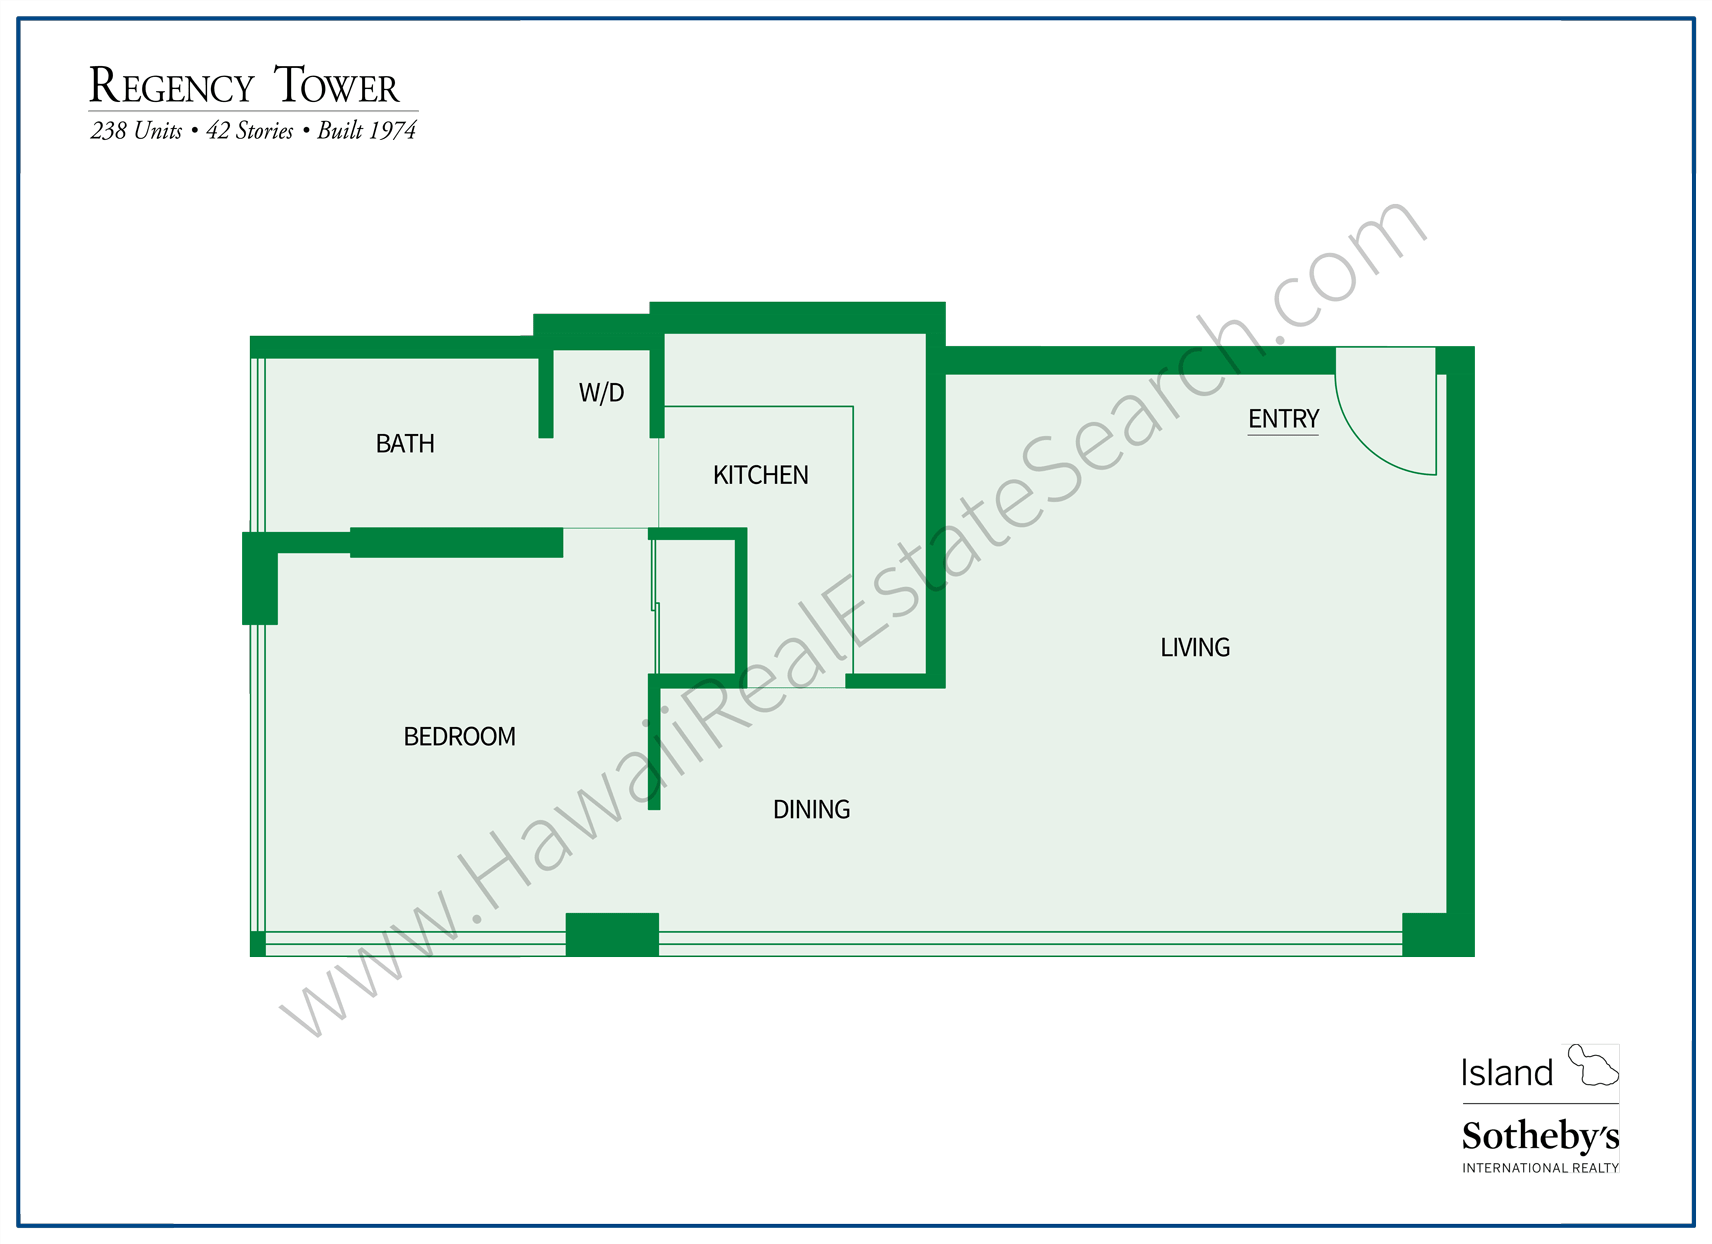 Oahu Regency Tower Floor Plan